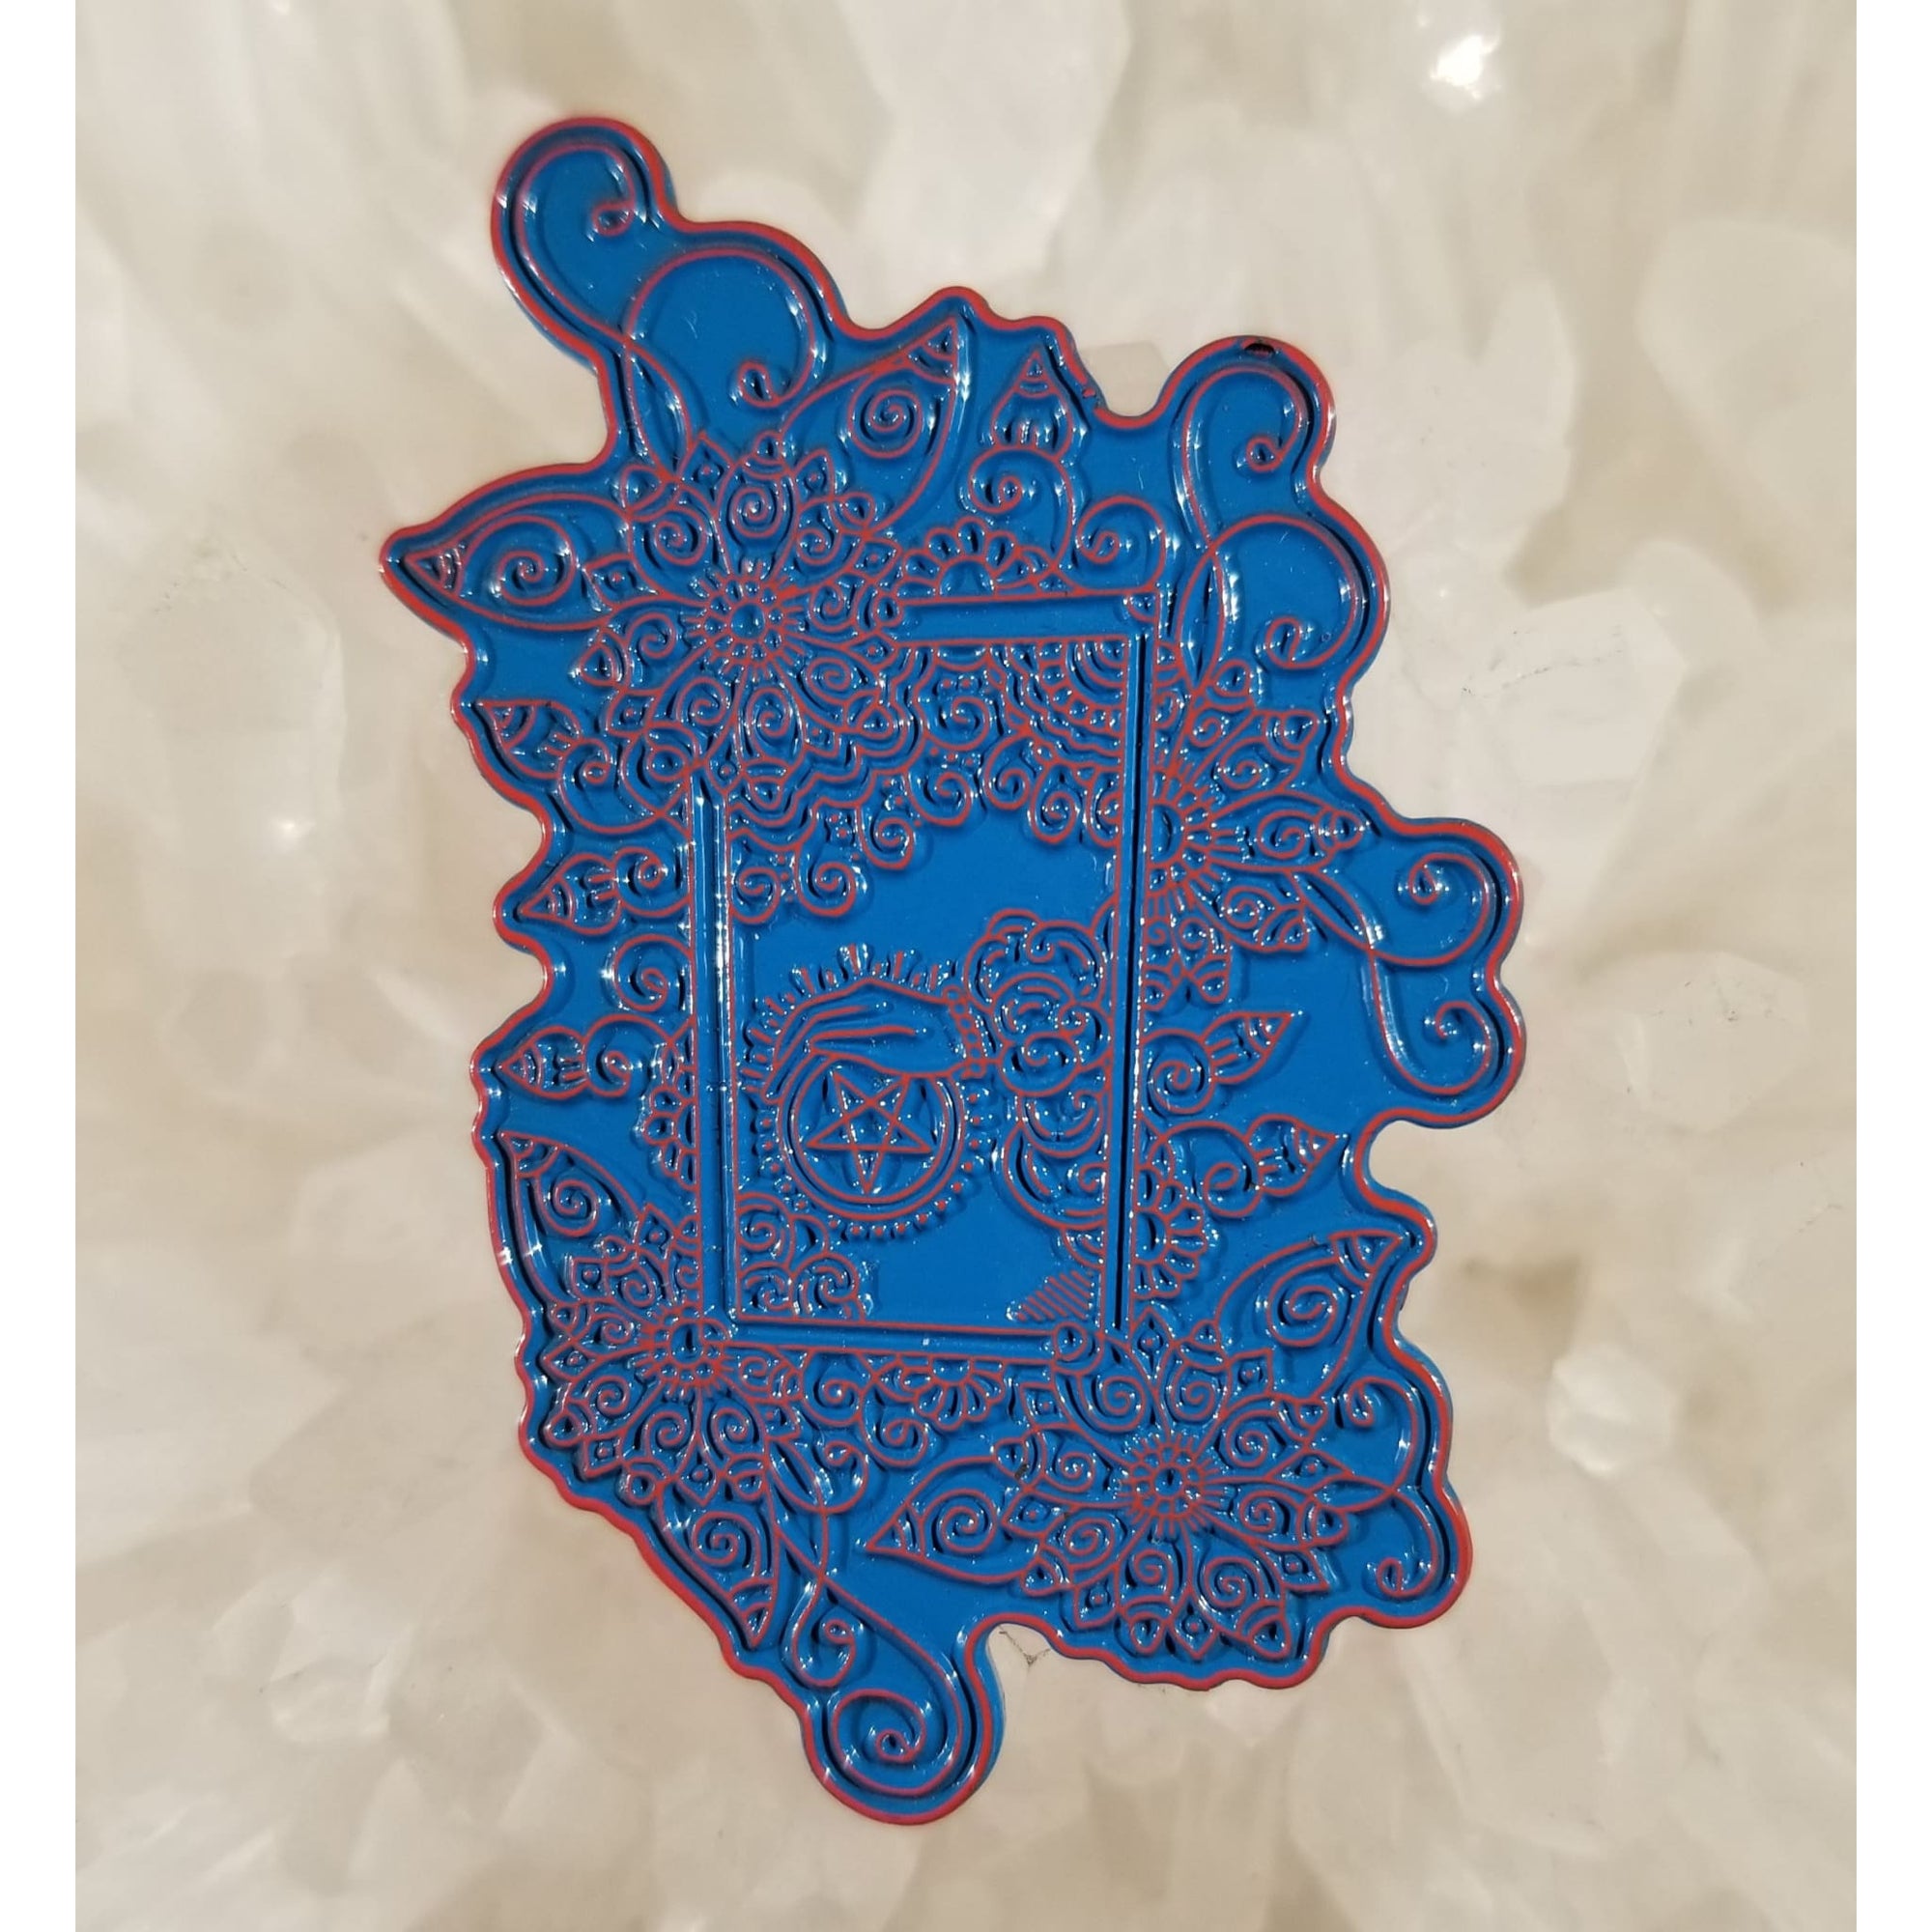 Tarot Card Paisley Flowers Spiritual Astrology Blue/Red Enamel Hat Pin - Enamel/Metal